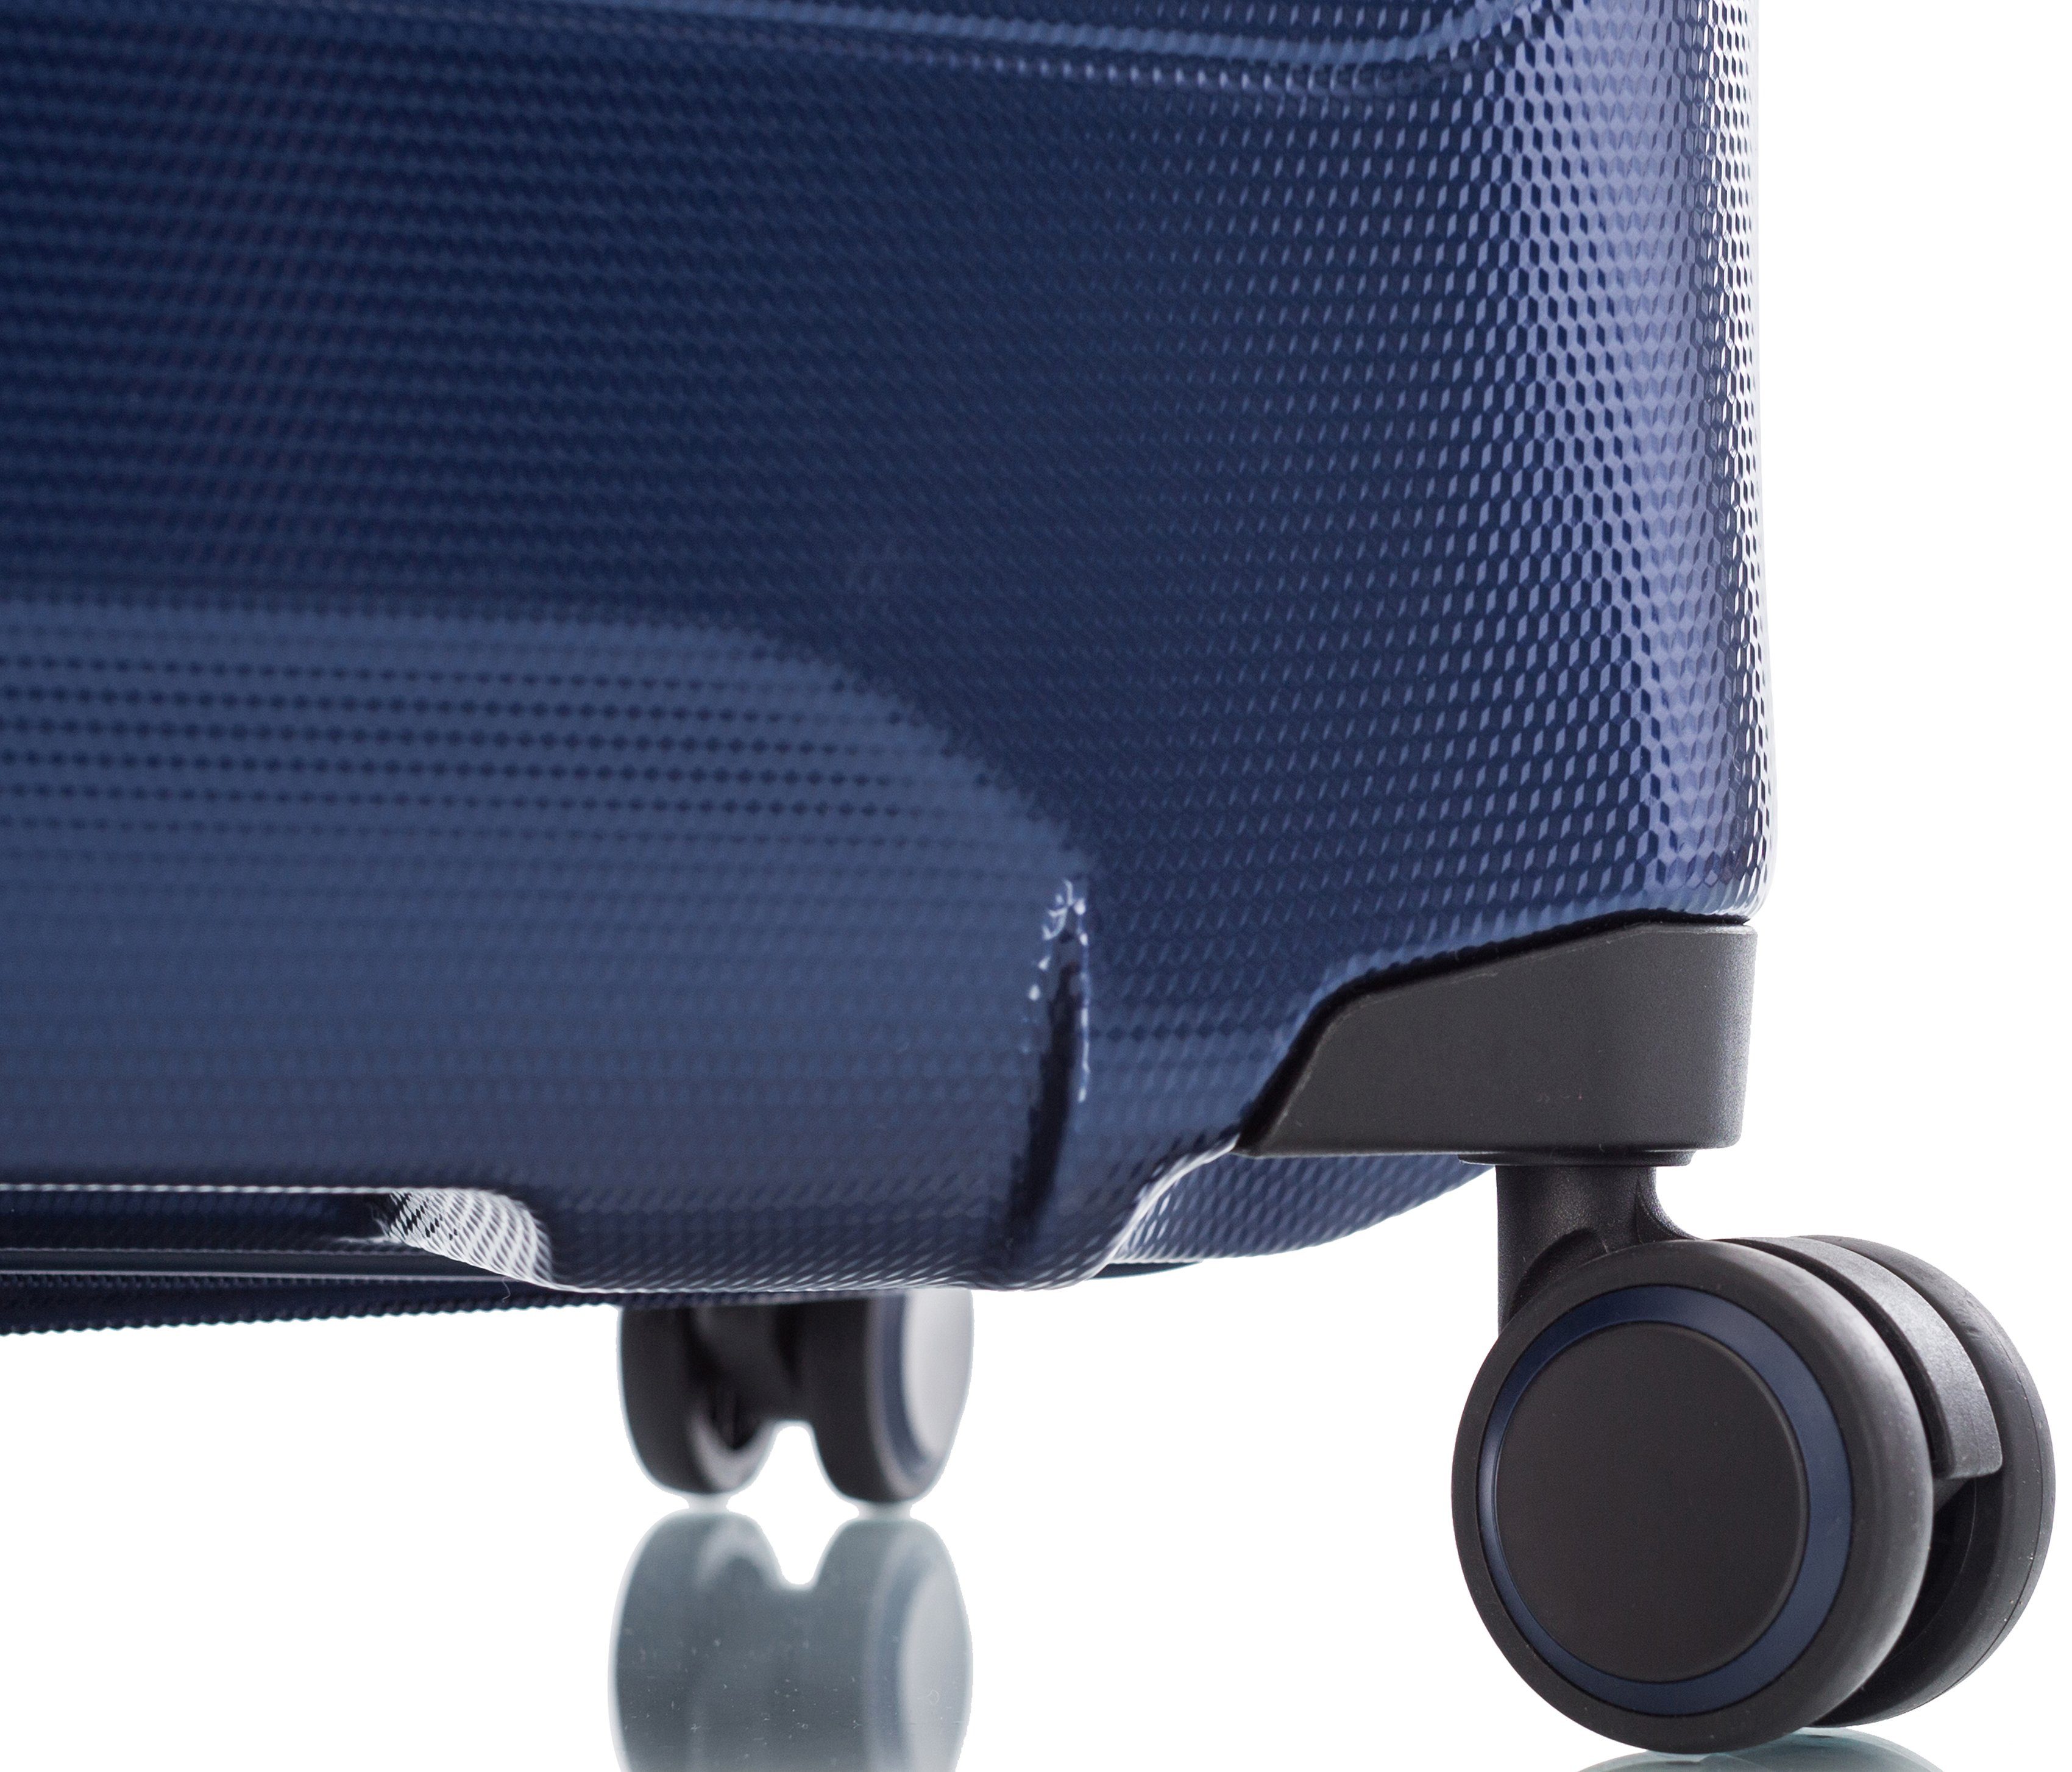 Damen Trolleys Heys Hartschalen-Trolley Eco Case, 66 cm, Navy Blau, 4 Rollen, mit Volumenerweiterung, zum Teil aus recyceltem Ma